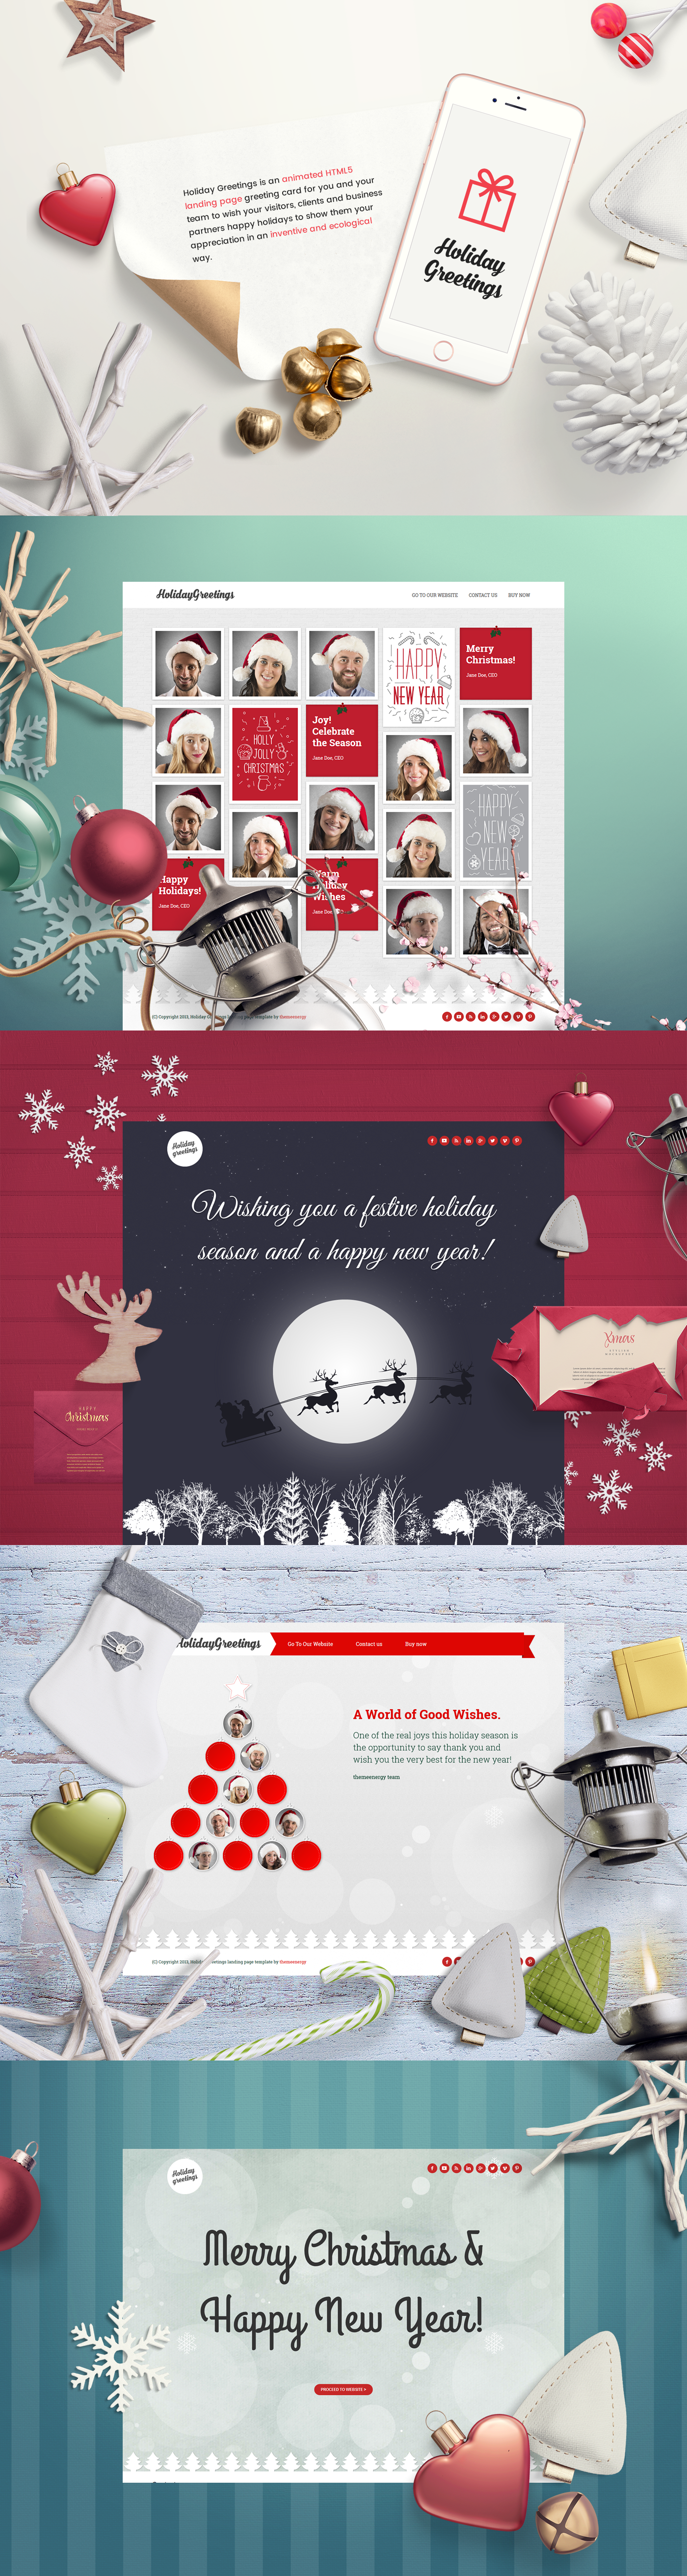 Christmas animation  html5 Holiday greetings landing template